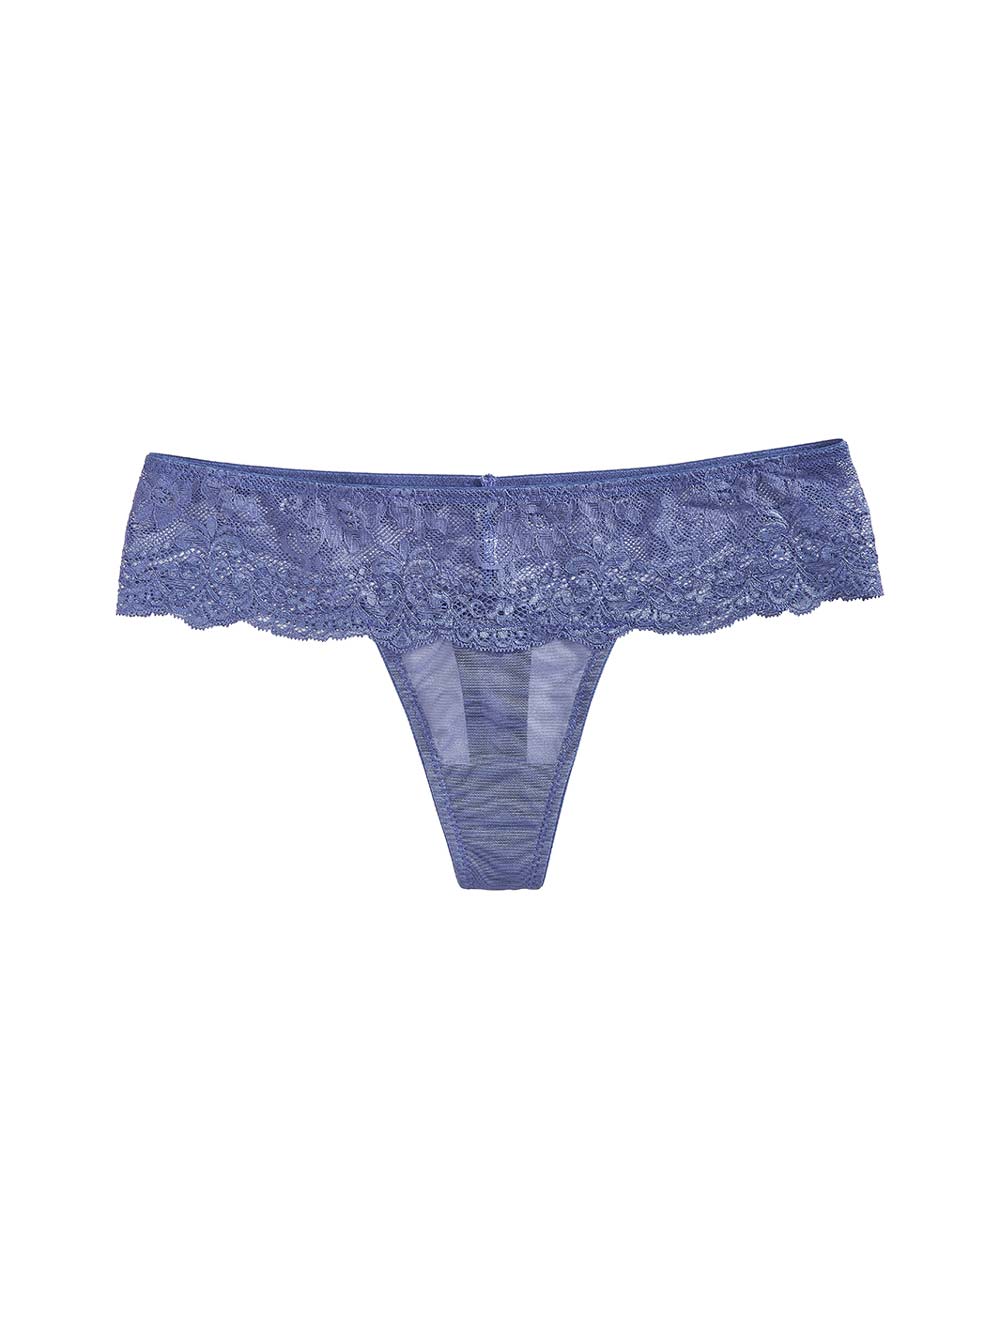 G-String Low-Waist Thong Lace Panties Korean Style Underwear Women